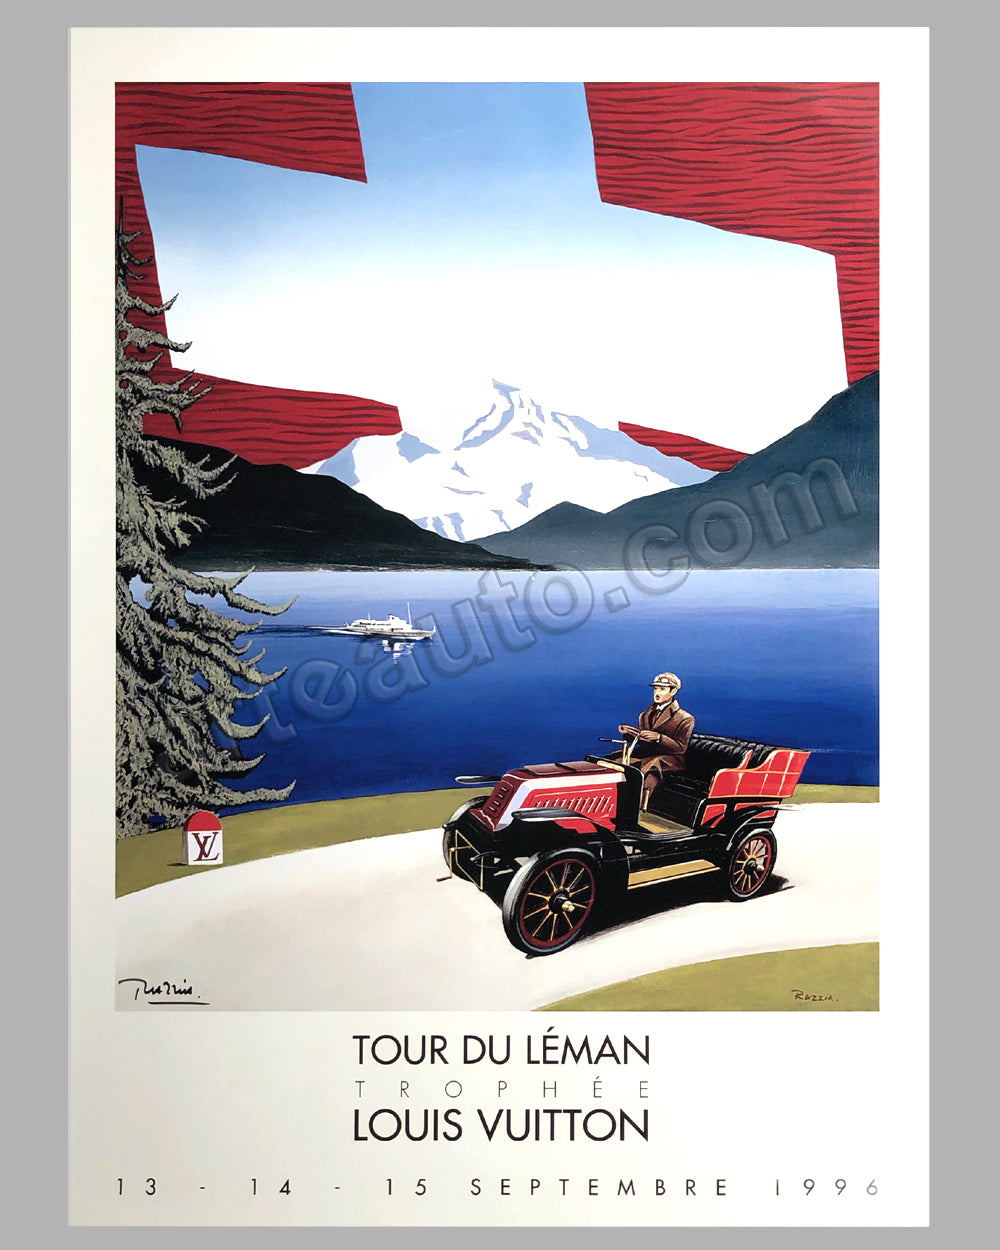 Vintage poster – Concours automobile classiques et Louis Vuitton, Parc de  Bagatelle – Galerie 1 2 3